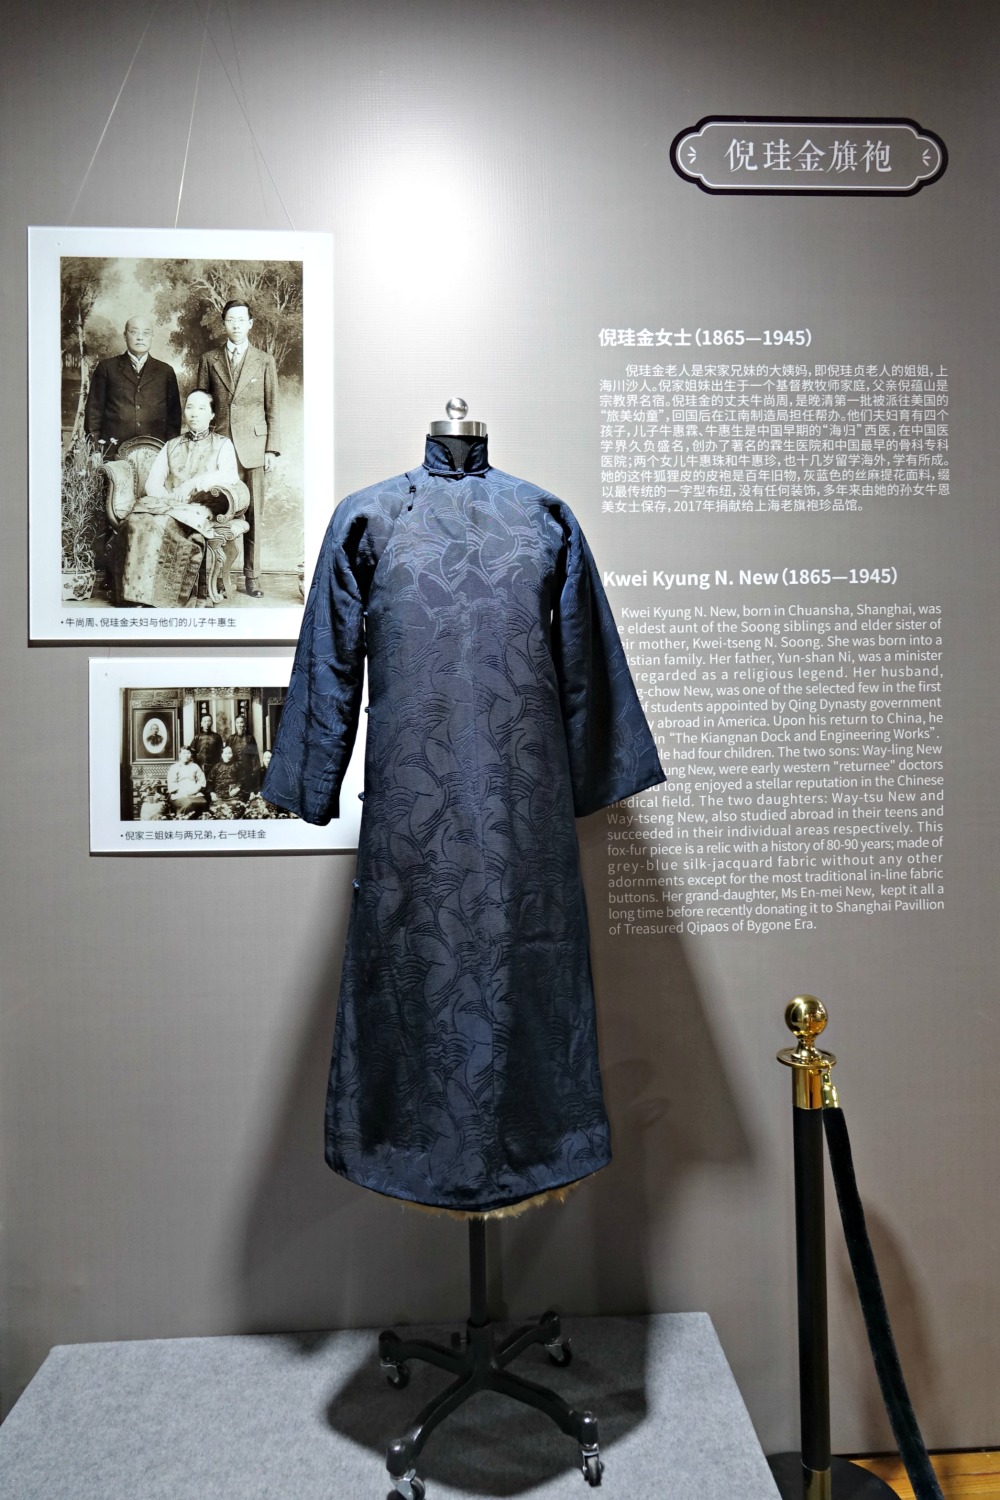 Ni Kwei-kyung navy fur lined qipao cheongsam